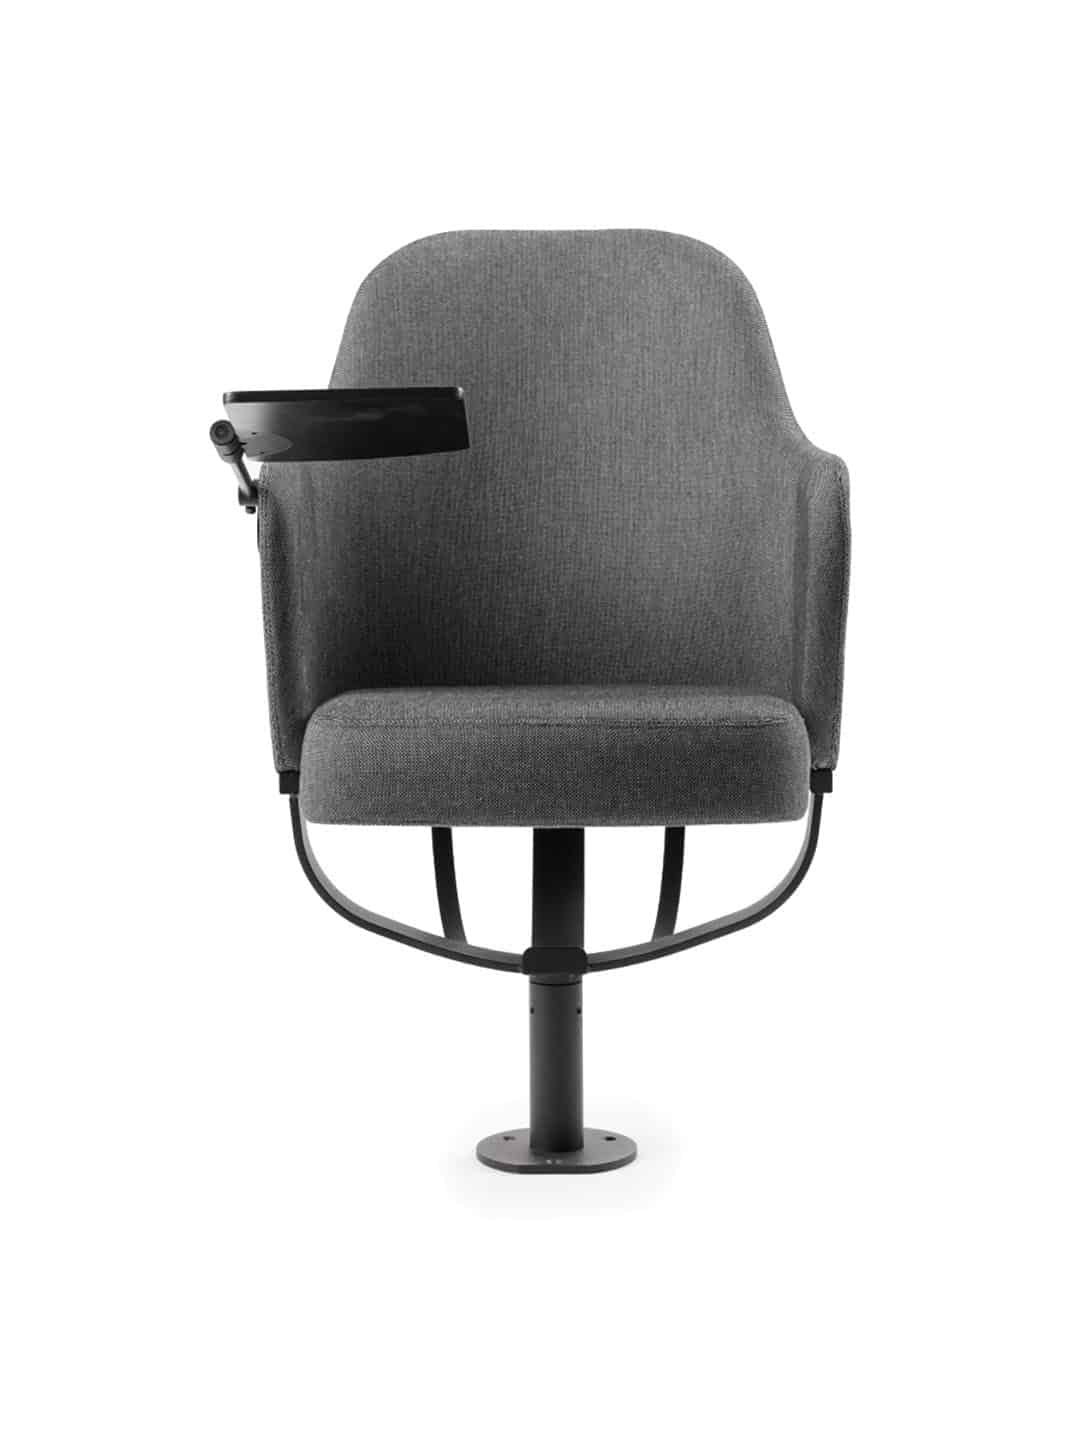 Оригинальное кресло для зрителей Garsnas Zen Auditorium серого цвета